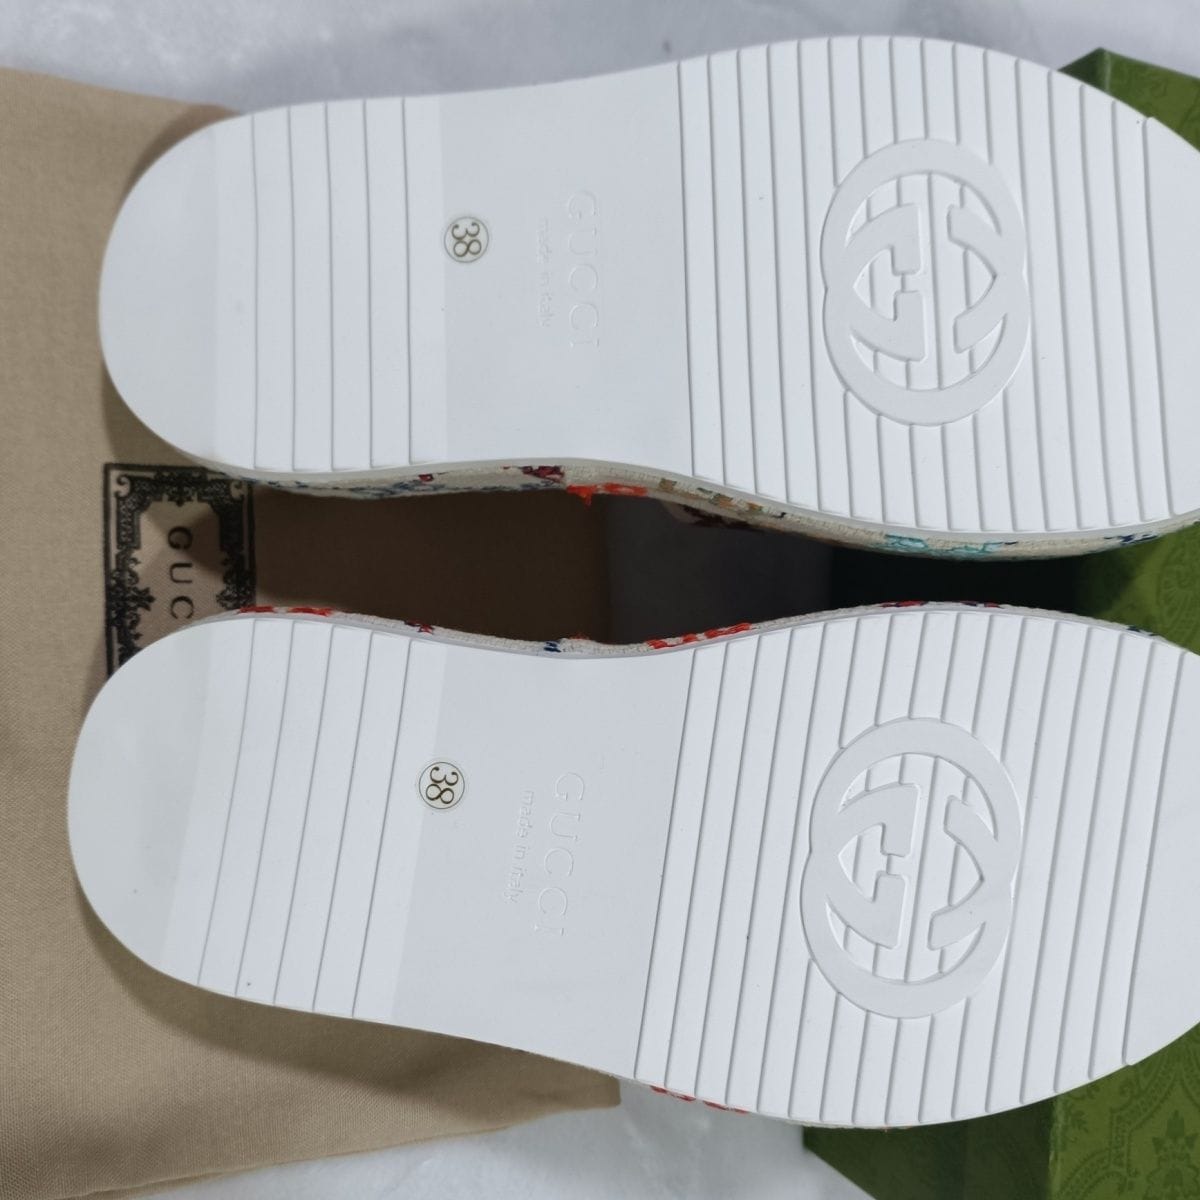 Gucci Multi Color Platform Sandals